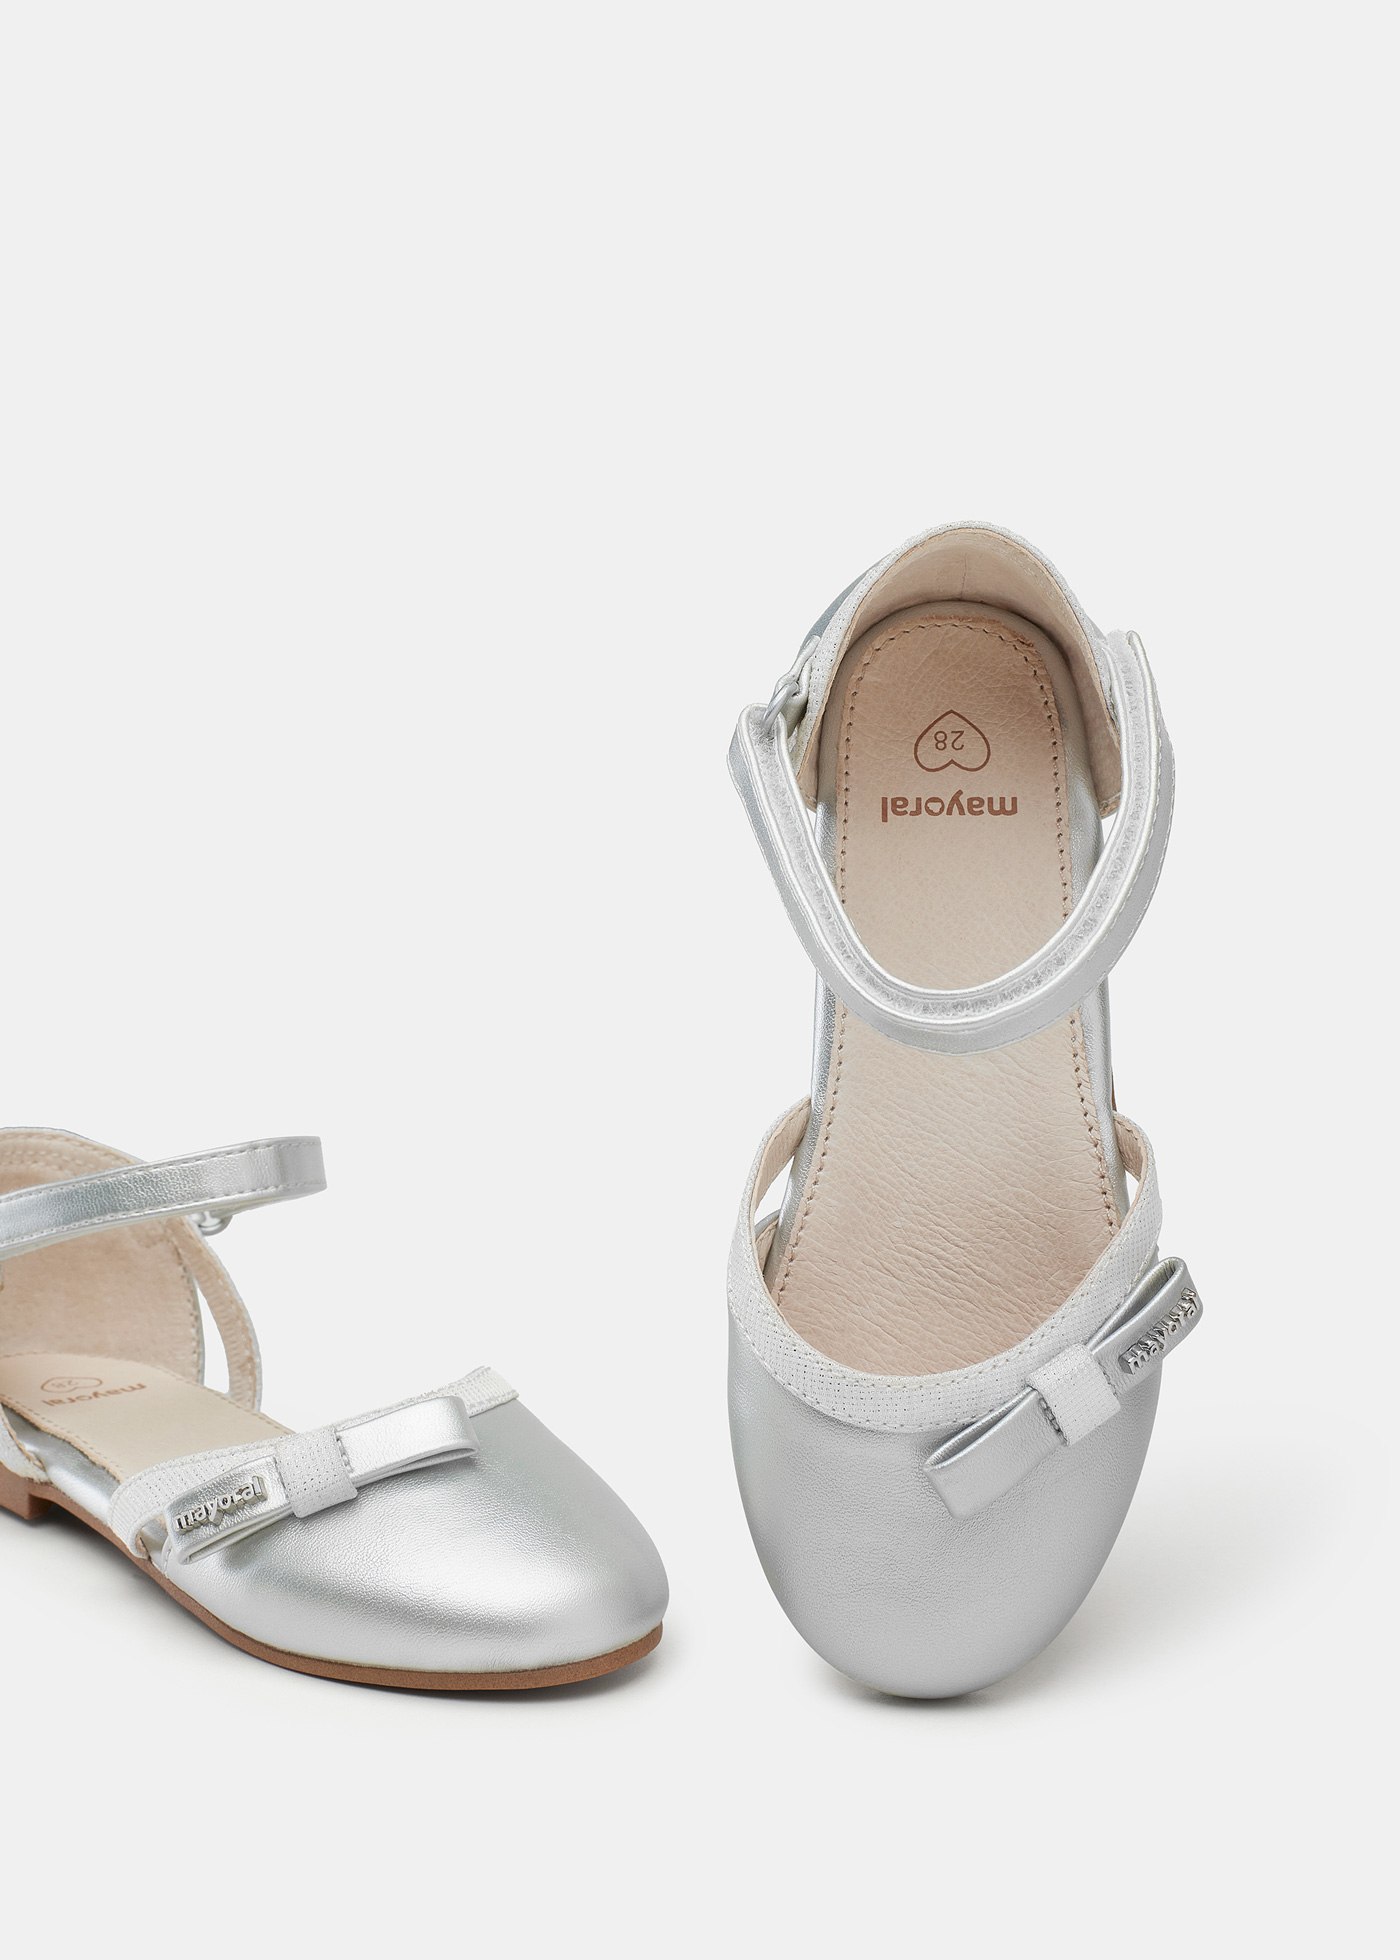 Girl Metallic Ballet Flats Sustainable Leather